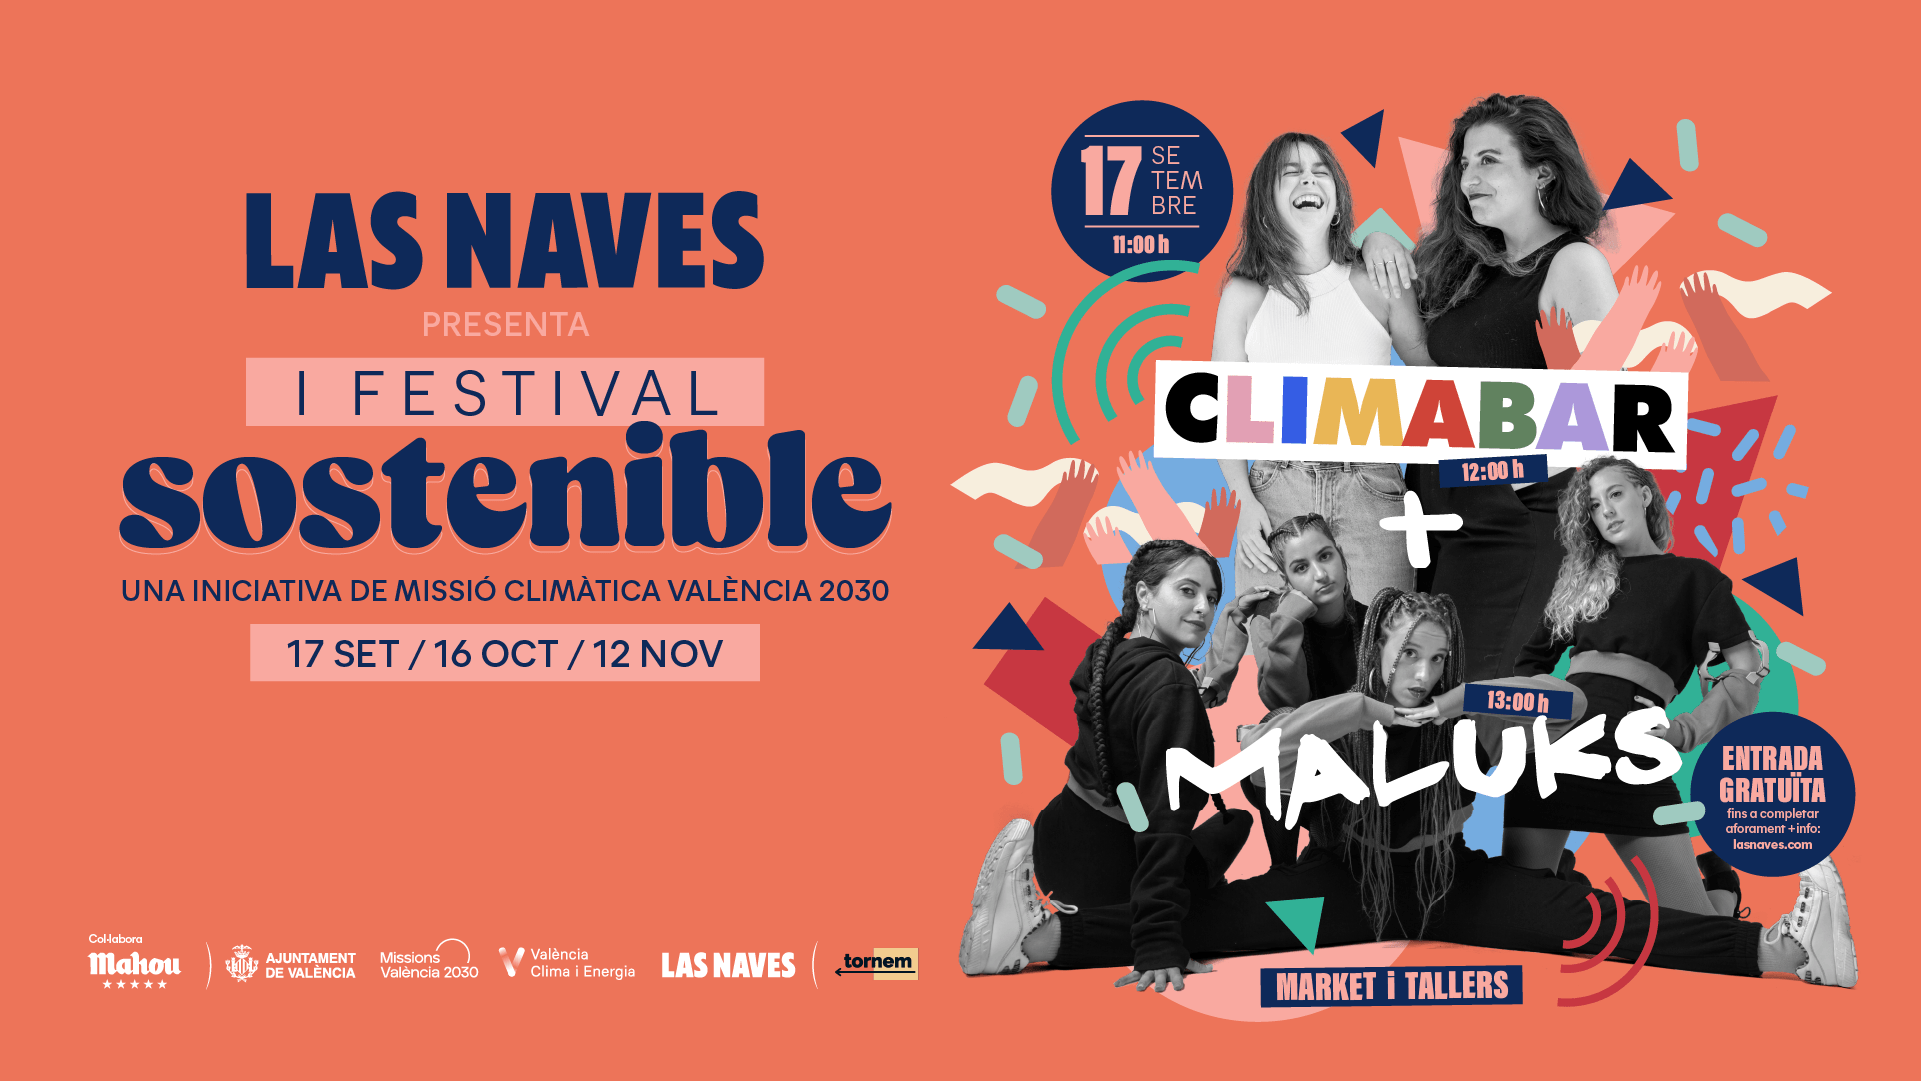 Cartel anunciador del I Festival Sostenible de Las Naves